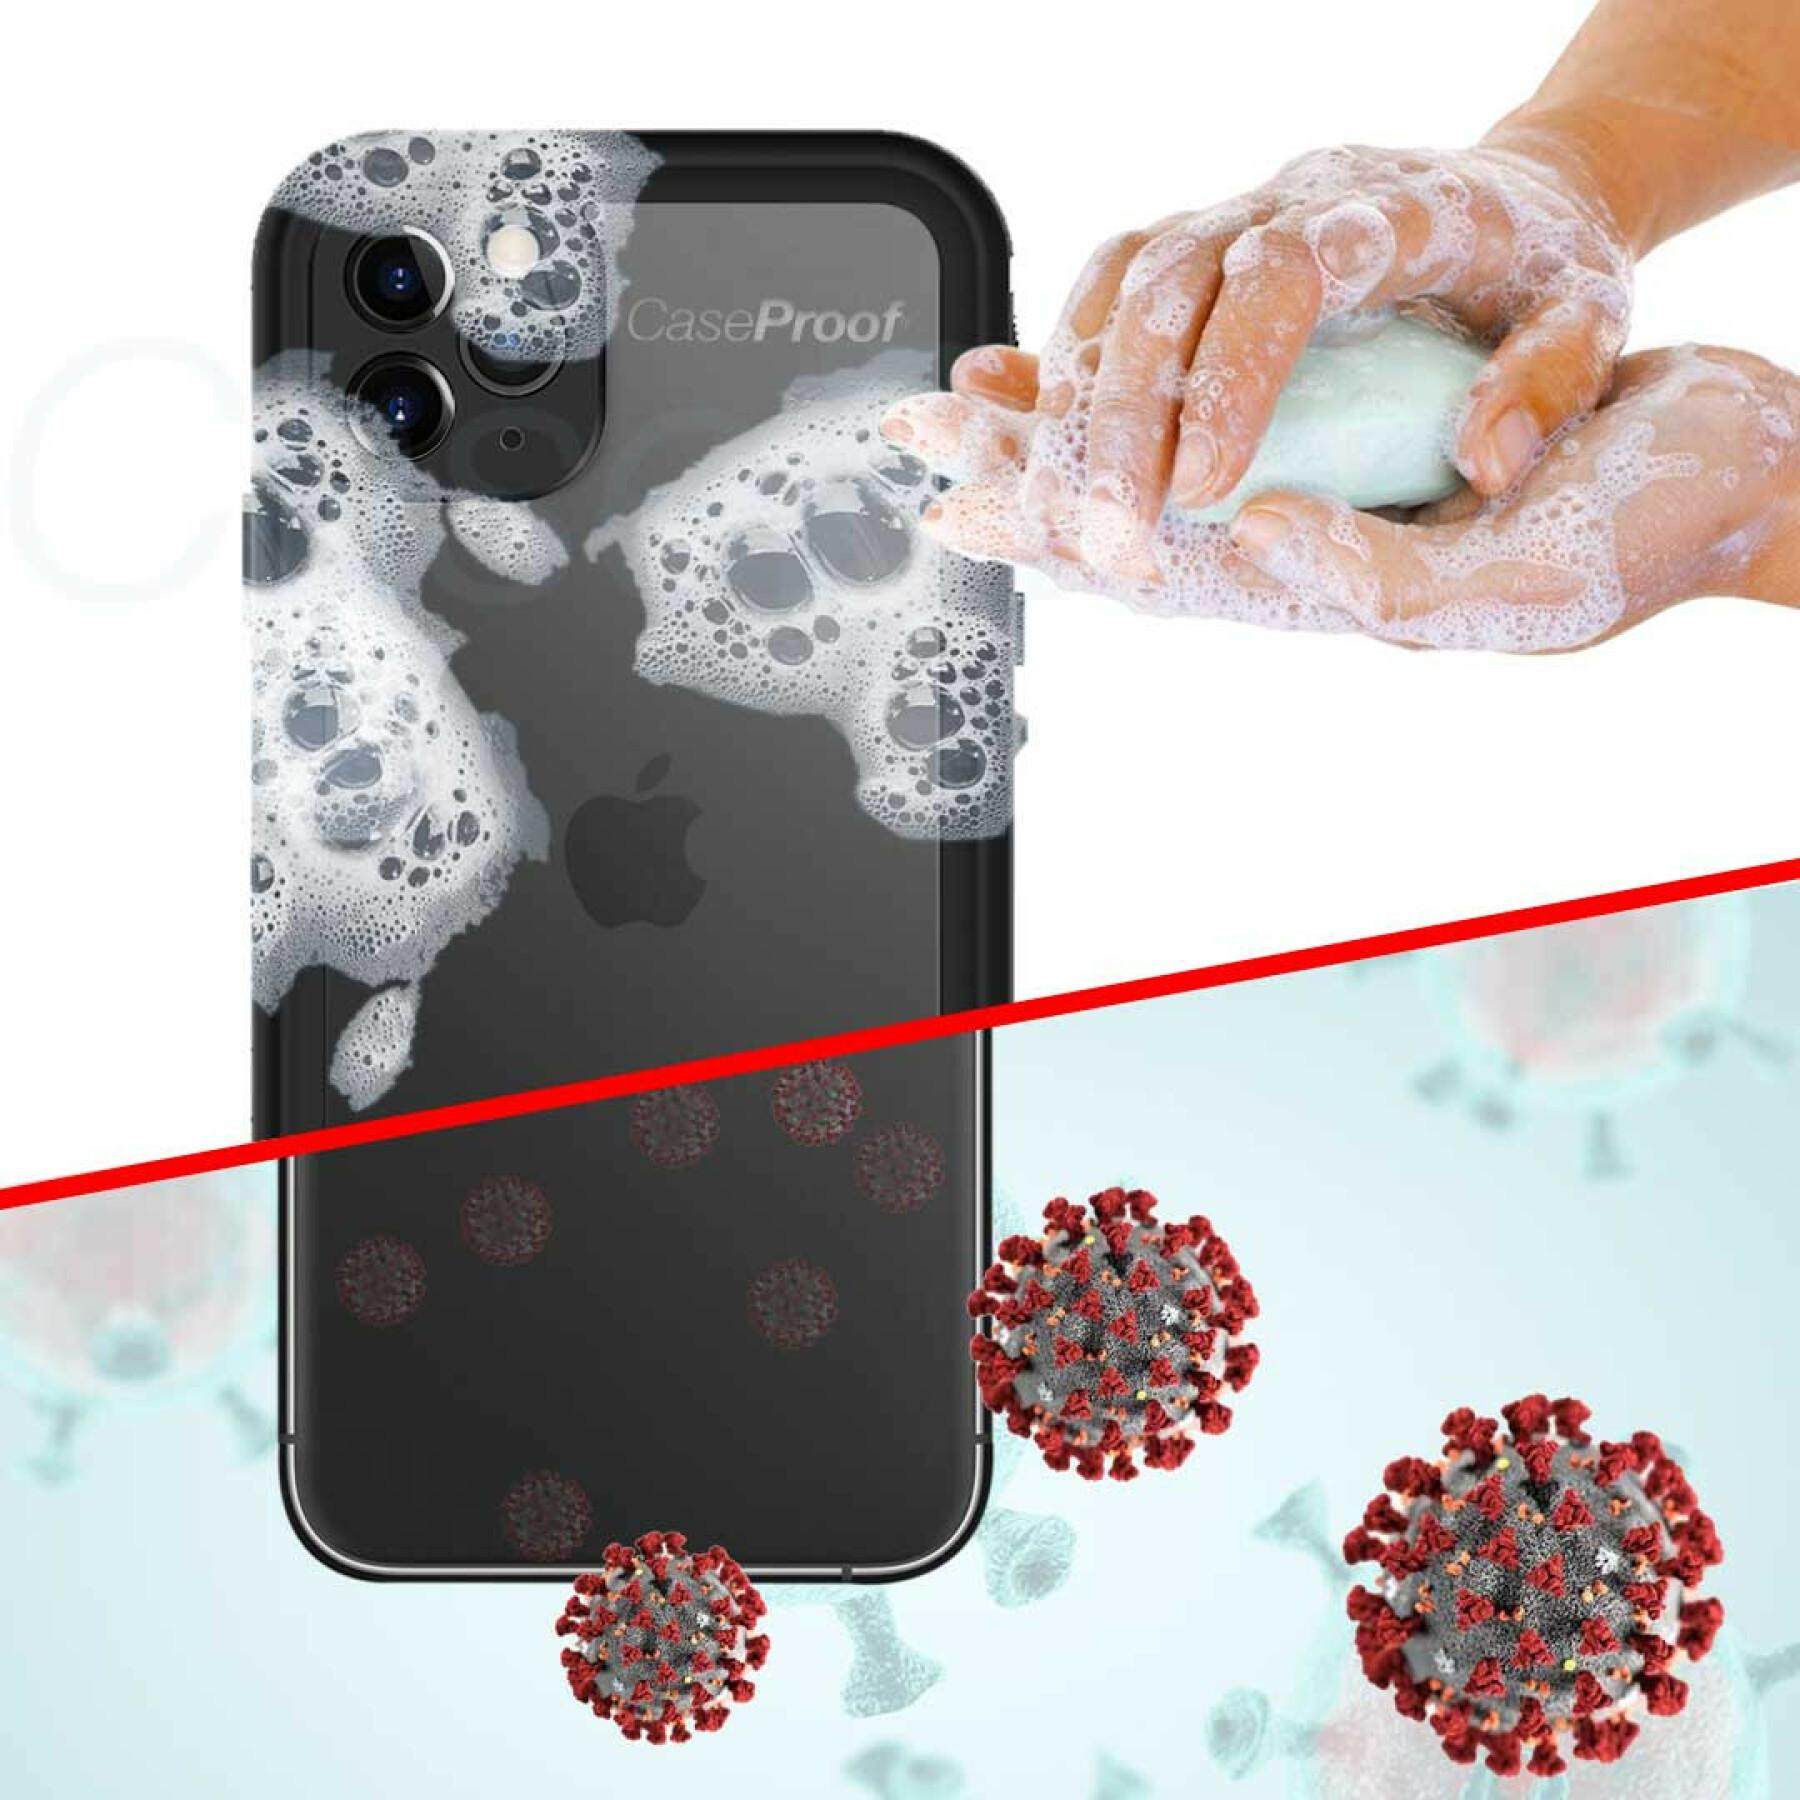 carcasa smartphone iphone xs max serie pro resistente al agua y a los golpes CaseProof